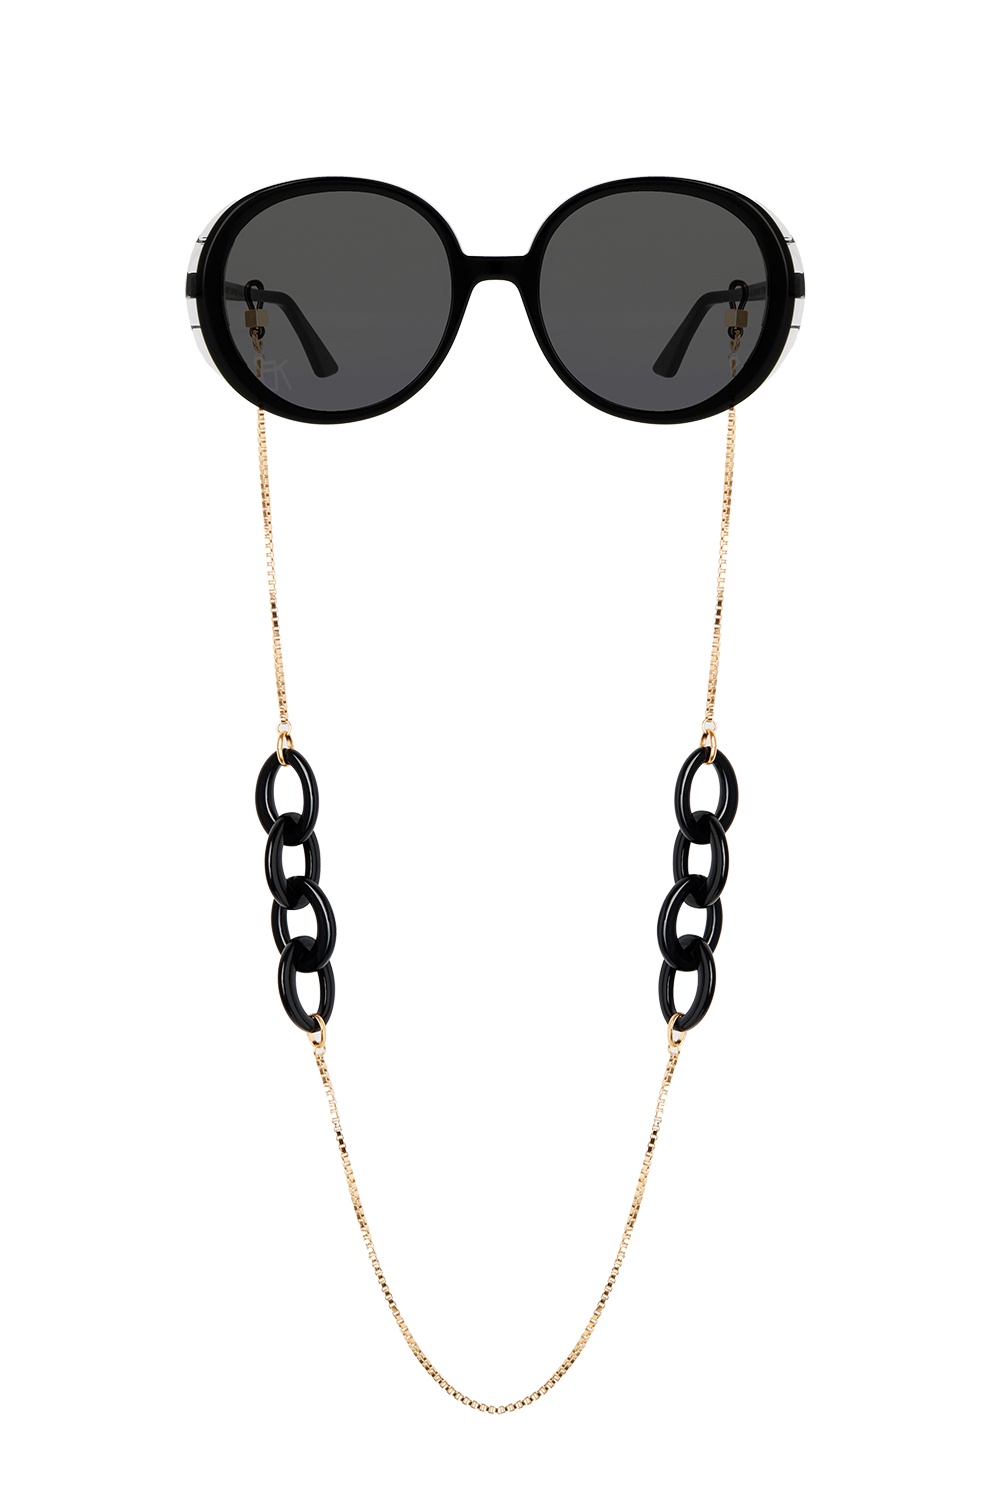 Emmanuelle Khanh Branded eyewear chain, Women's Accessories